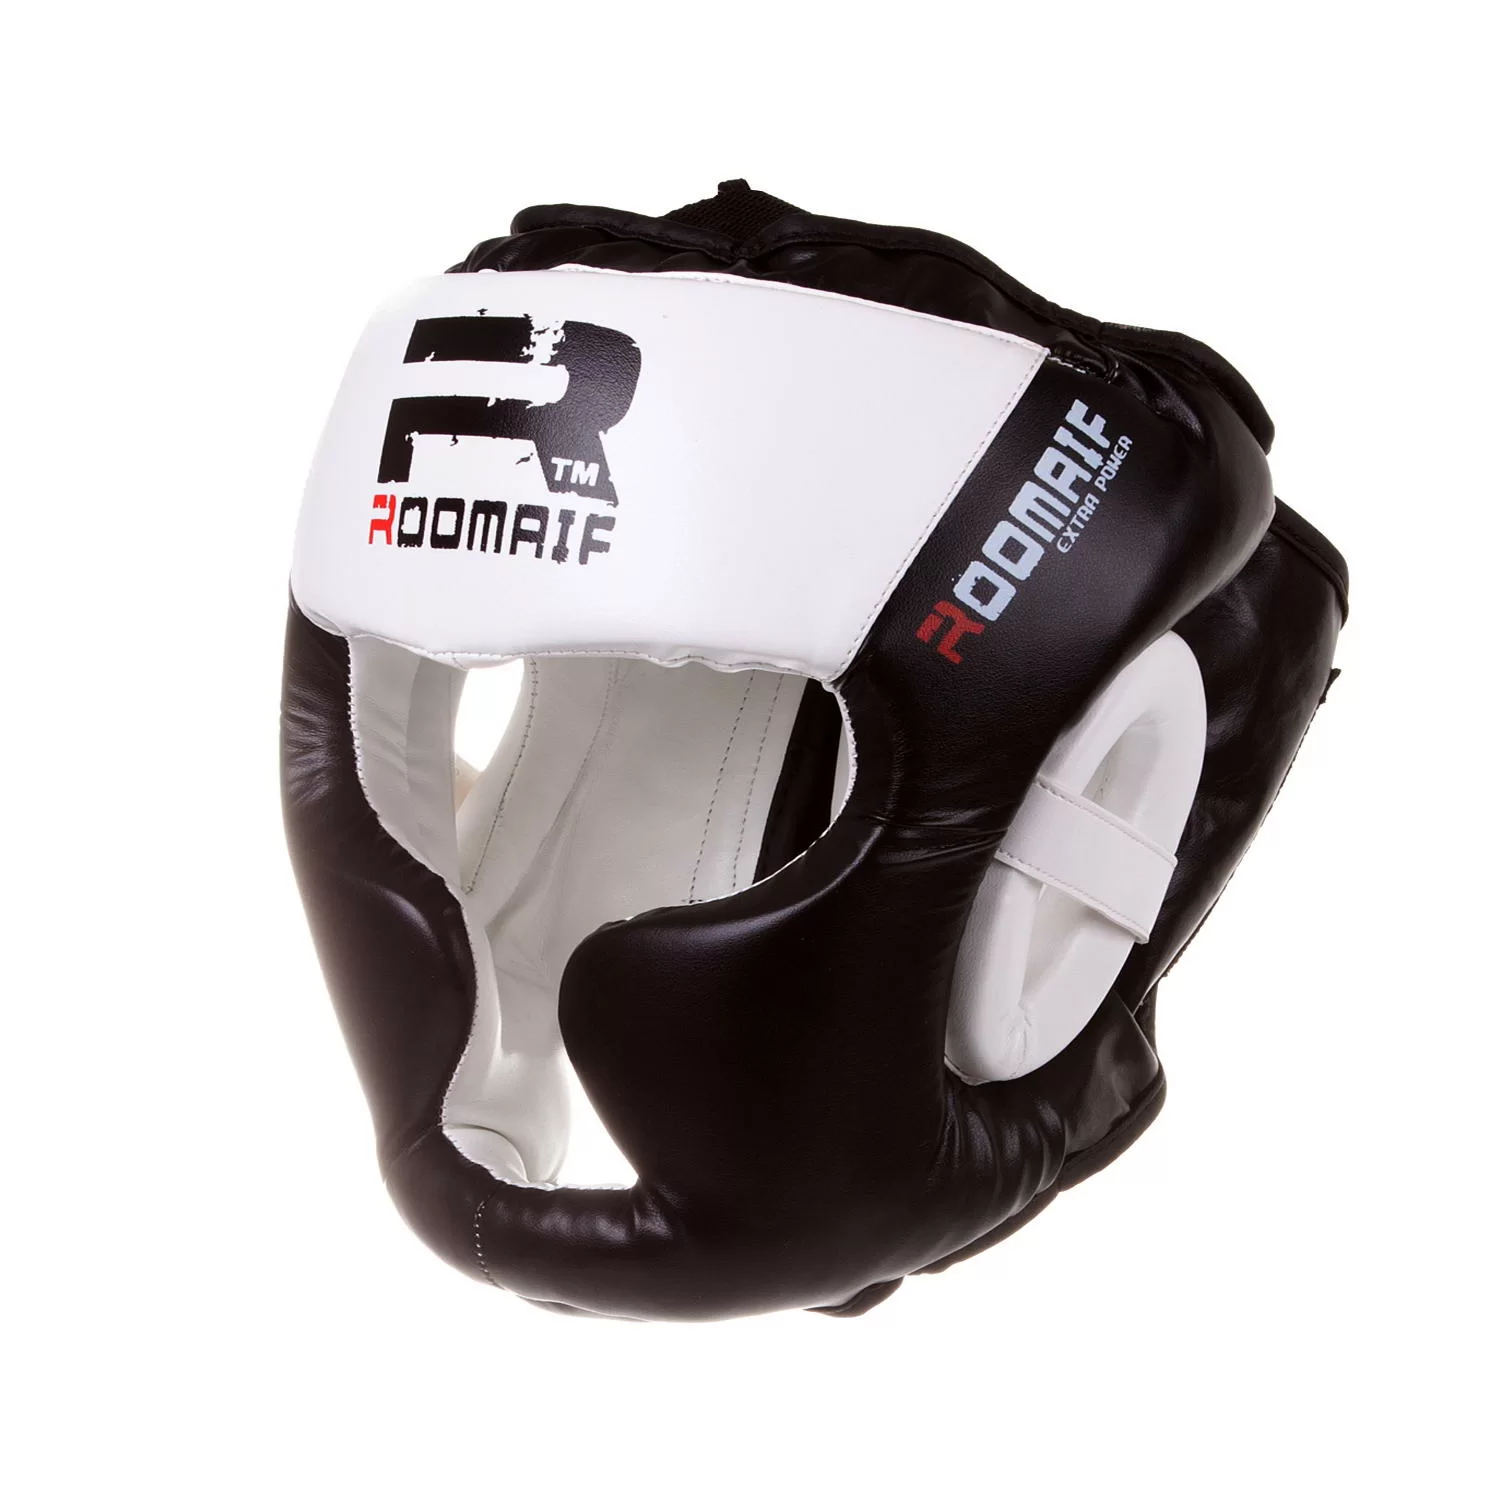 Реальное фото Шлем боксерский Roomaif RHG-150 3G PU/PL защитный черно-белый от магазина СпортЕВ